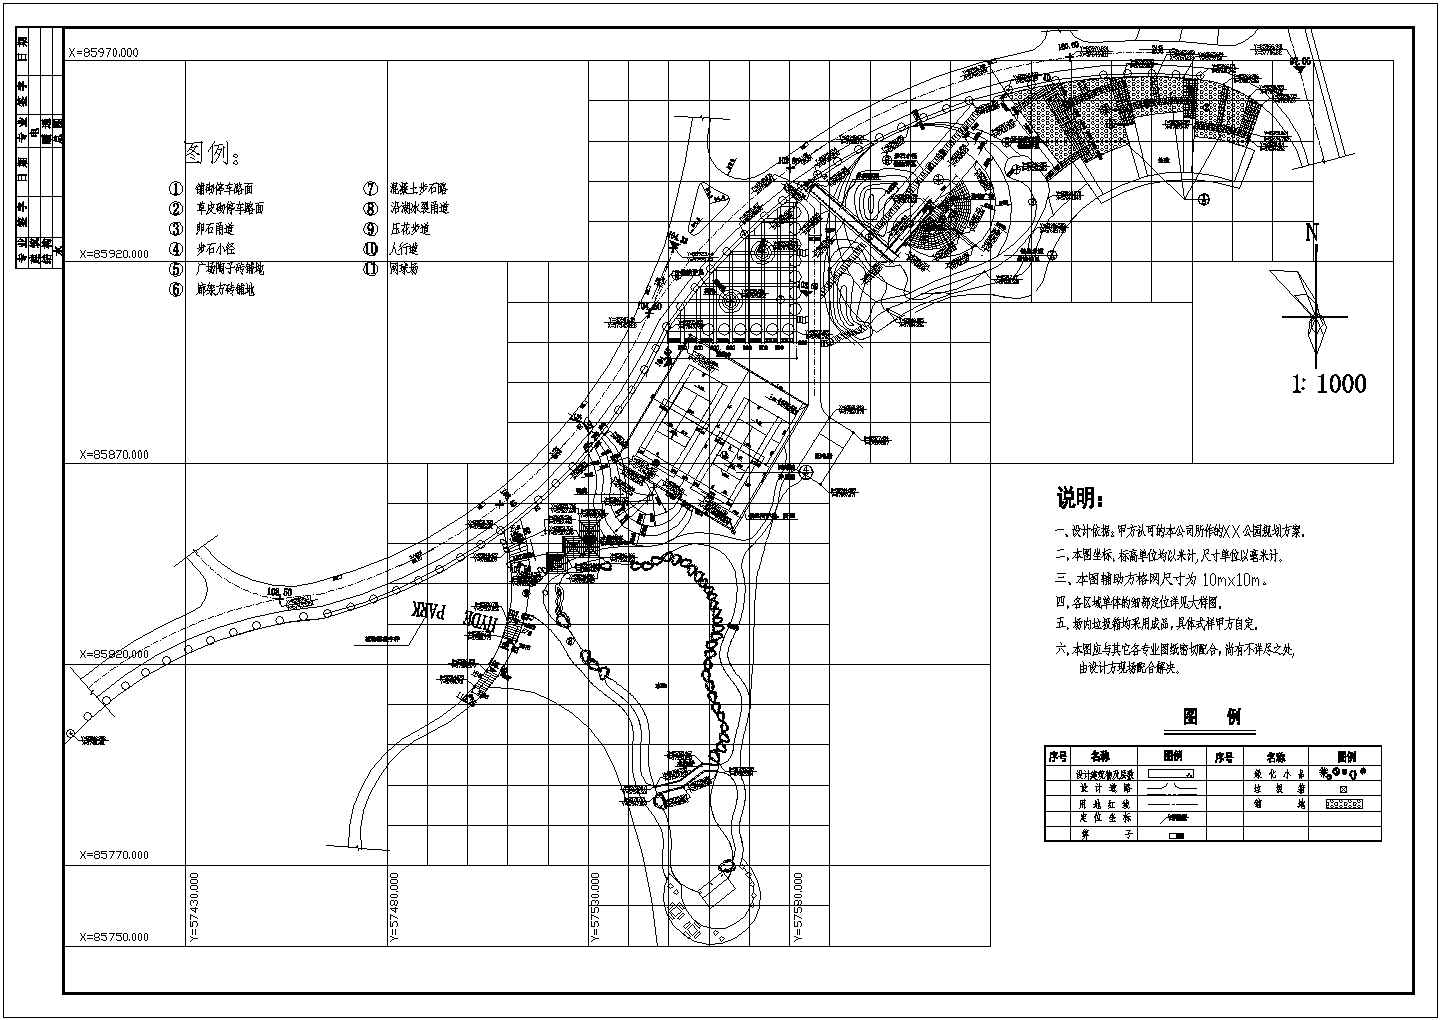 【沈阳】海德公园景观规划设计施工套图